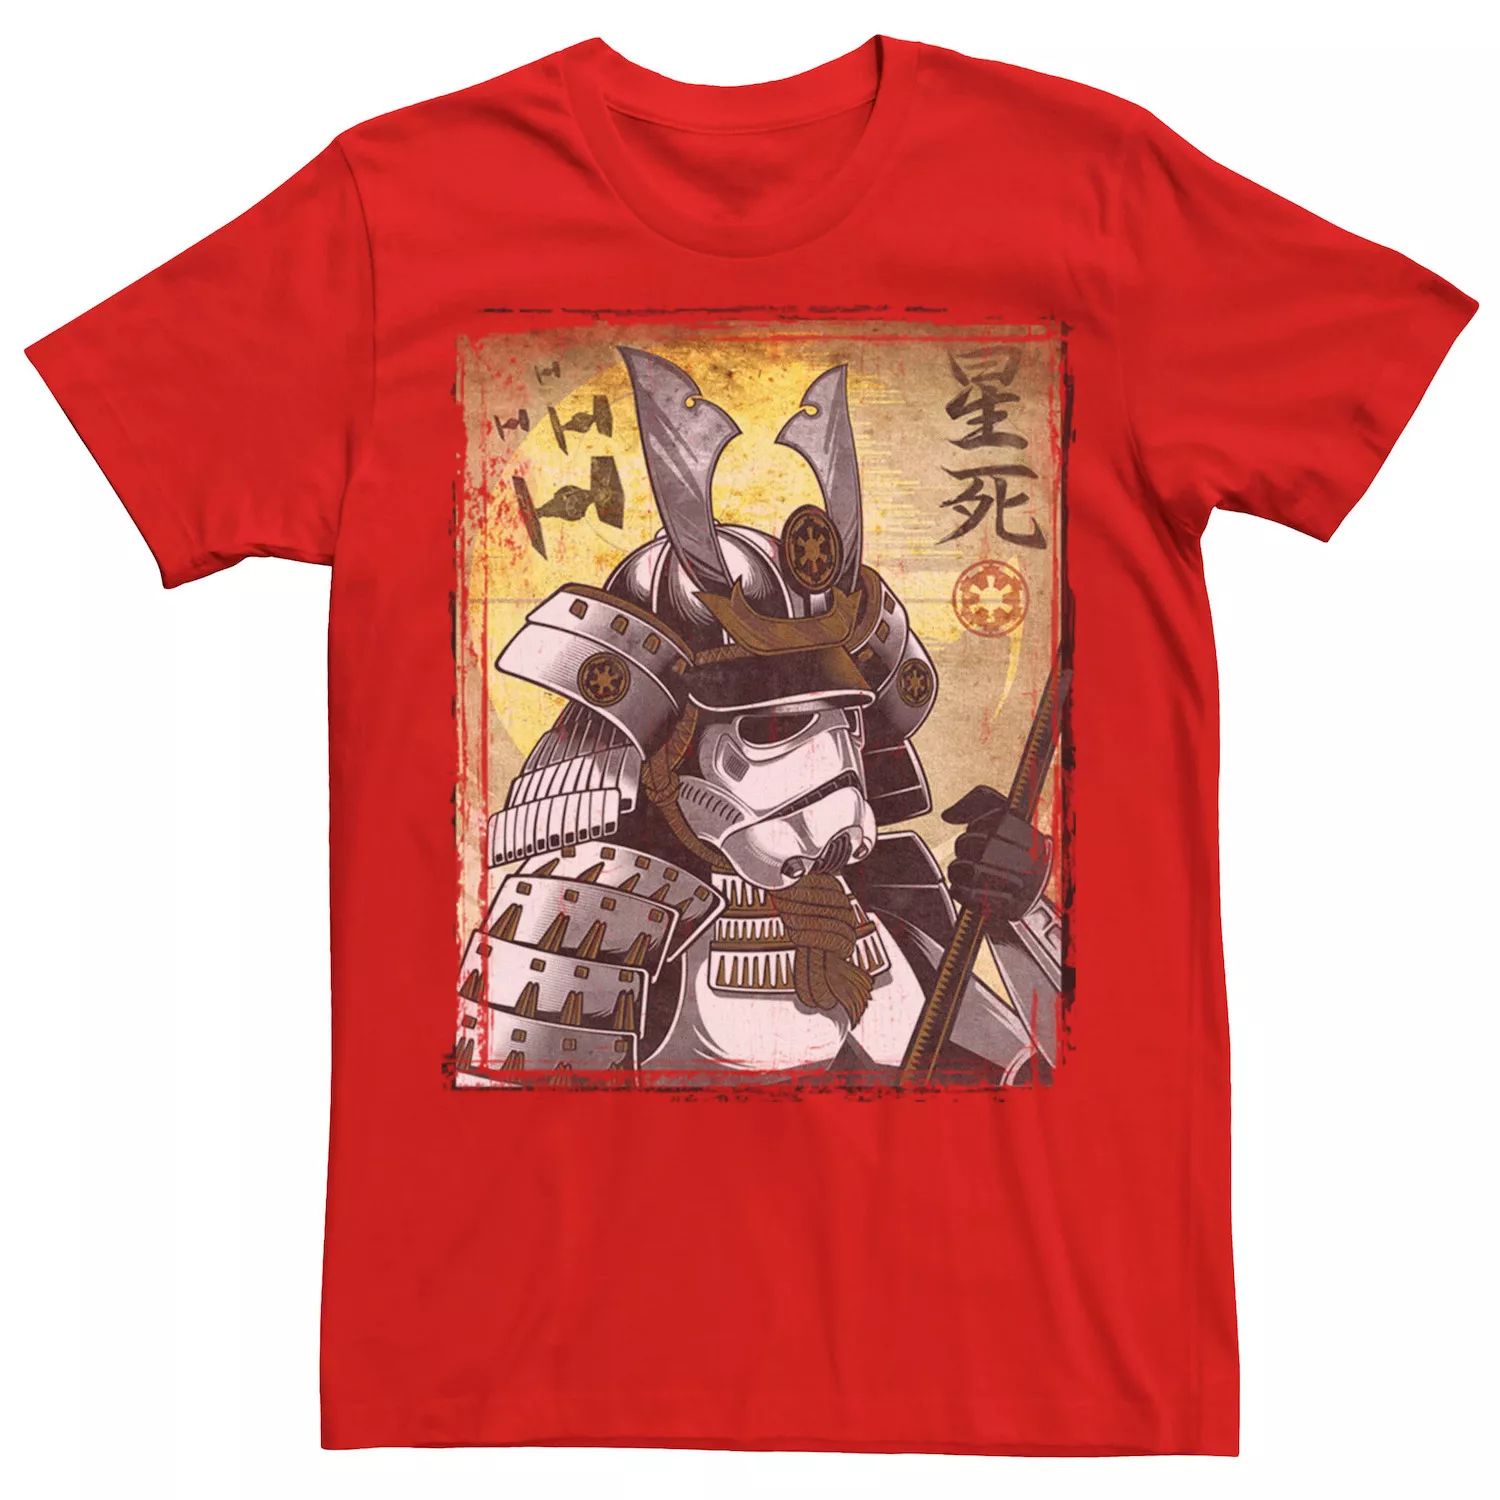 Мужская футболка с плакатом «Самурай-солдат Звездных войн» Star Wars, красный мужская футболка кролик самурай s красный